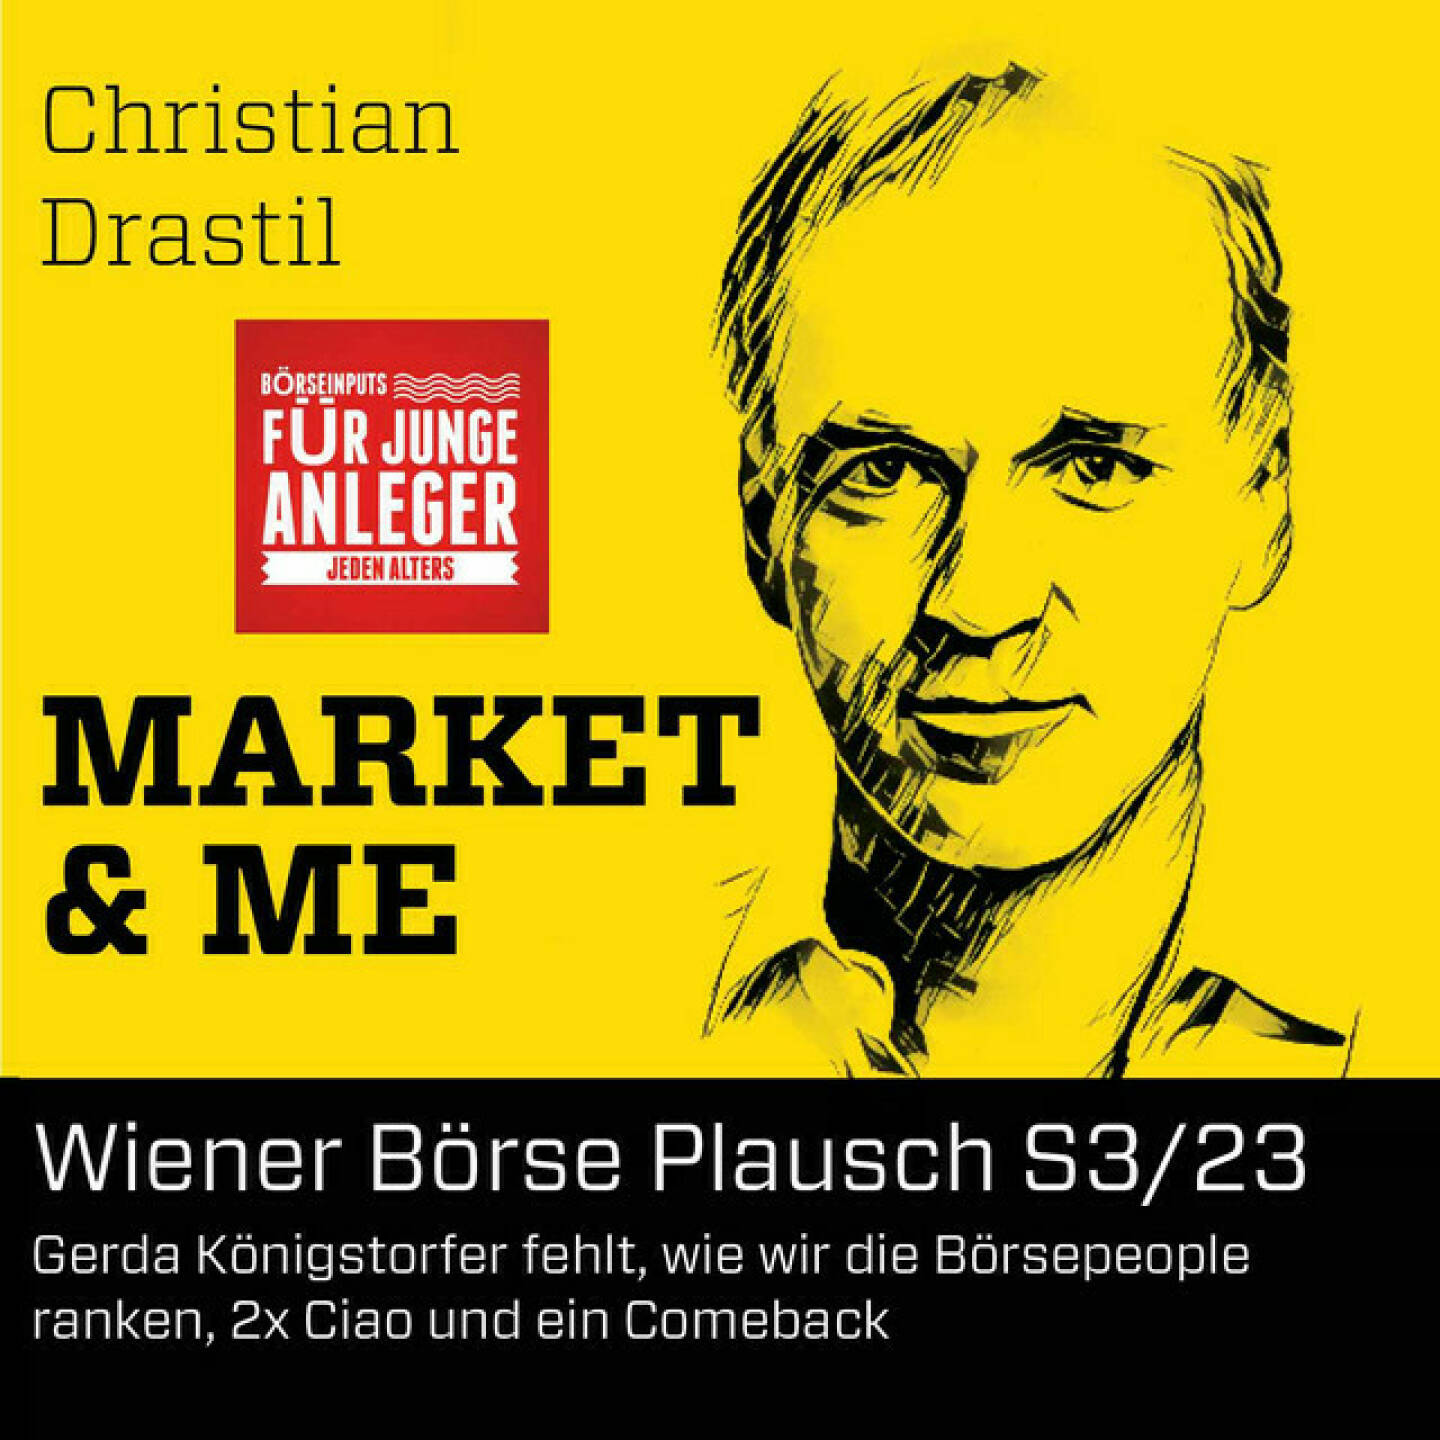 https://open.spotify.com/episode/4cLkBXMaJla4URRsU4QW7i
Wiener Börse Plausch S3/23: Gerda Königstorfer fehlt, wie wir die Börsepeople ranken, 2x Ciao und ein Comeback - <p>Die Wiener Börse Pläusche sind ein Podcastprojekt von Christian Drastil Comm. Unter dem Motto „Market &amp; Me“ berichtet Christian Drastil über das Tagesgeschehen an der Wiener Börse. In Folge S3/23 geht es um eine Nachmittagsvariante mit gutem Grund, Stichwort CIRA-Jahrestagung mit CIRA-Lauf, Gerda Königstorfer hat gefehlt, aber Max Fischer war genial. Weiters: Wurde mein Jingle von einem Podcast-Gast ausgelacht. Ein Hörerfrage kam zum Ranking unter http://www.boersenradio.at/people und potenziellen Tricks dahinter. Gestern kam noch ein schnelles Intraday-Ciao von Friedrich Wachernigg und heute Käufe von Cleen Energy, Verkäufe von Morgan Stanley und Research zu Palfinger, voestalpine, Verbund und ams Osram. Und zum Schluss kommt noch &#34;If you go away&#34; (Ciao 2), auch in Richtung Aktionäre, die den Markt verlassen wollen. Sollte man nicht tun.</p><br/><p>Bilder CIRA Lauf:  <a href=https://photaq.com/page/index/4070 rel=nofollow>https://photaq.com/page/index/4070</a><br/>Podcast, in dem Diana Kaufhold meinen Jingle auslacht:  <a href=https://boersenradio.at/page/podcast/3448 rel=nofollow>https://boersenradio.at/page/podcast/3448</a><br/>Song If you go away: <a href=https://boersenradio.at/page/podcast/3450 rel=nofollow>https://boersenradio.at/page/podcast/3450</a></p><br/><p>Die 2022er-Folgen vom Wiener Börse Plausch sind präsentiert von Wienerberger, CEO Heimo Scheuch hat sich im Q4 ebenfalls unter die Podcaster gemischt: <a href=https://open.spotify.com/show/5D4Gz8bpAYNAI6tg7H695E rel=nofollow>https://open.spotify.com/show/5D4Gz8bpAYNAI6tg7H695E</a> . Co-Presenter im September ist die VAS AG <a href=https://www.vas.co.at rel=nofollow>https://www.vas.co.at</a> , da werden wir im Monatsverlauf einiges bringen.</p><br/><p>Der Theme-Song, der eigentlich schon aus dem Jänner stammt und spontan von der Rosinger Group supportet wurde: Sound &amp; Lyrics unter http://www.boersenradio.at/page/podcast/2734 .</p><br/><p>Risikohinweis: Die hier veröffentlichten Gedanken sind weder als Empfehlung noch als ein Angebot oder eine Aufforderung zum An- oder Verkauf von Finanzinstrumenten zu verstehen und sollen auch nicht so verstanden werden. Sie stellen lediglich die persönliche Meinung der Podcastmacher dar. Der Handel mit Finanzprodukt en unterliegt einem Risiko. Sie können Ihr eingesetztes Kapital verlieren. Und: Bewertungen bei Apple (oder auch Spotify) machen mir Freude: <a href=https://podcasts.apple.com/at/podcast/christian-drastil-wiener-börse-sport-musik-und-mehr-my-life/id1484919130 rel=nofollow>https://podcasts.apple.com/at/podcast/christian-drastil-wiener-börse-sport-musik-und-mehr-my-life/id1484919130</a>.</p>